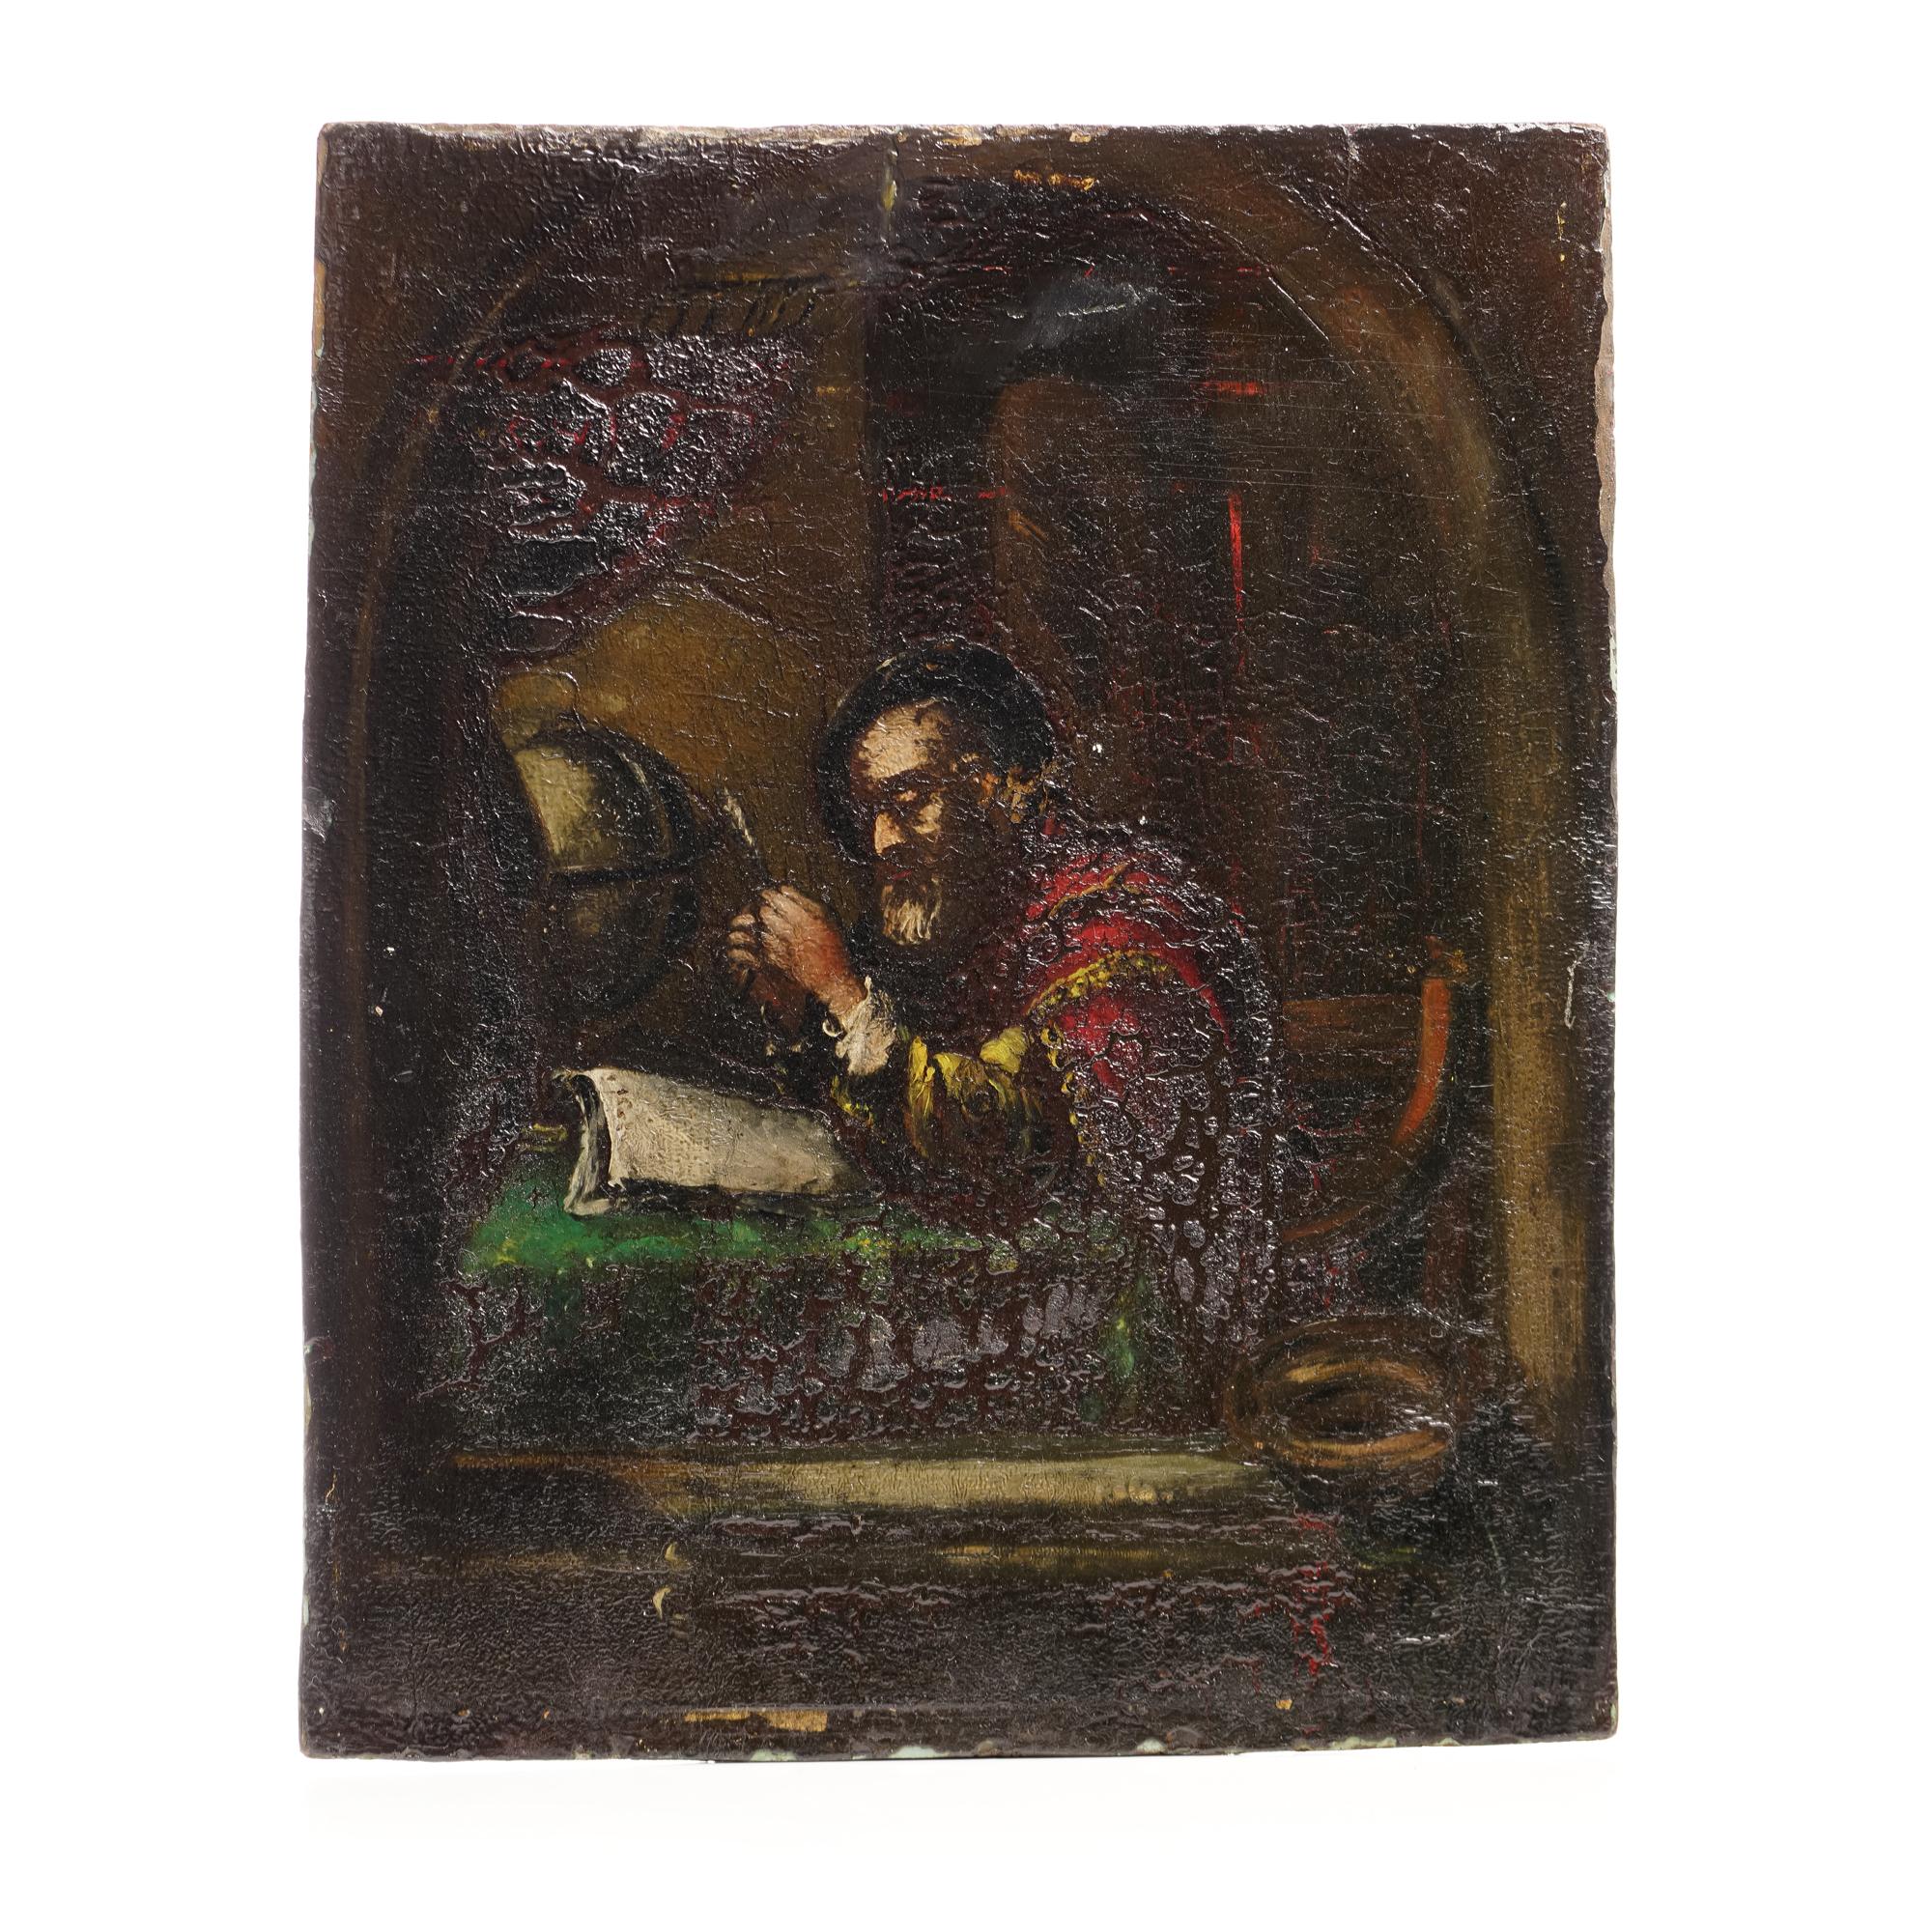 Huile sur panneau de bois du 16e siècle : Scholar in Solitude 

Cette peinture représente un érudit solitaire assis à une table, plongé dans les pages d'un livre ouvert. À ses côtés repose un globe terrestre, symbole de ses activités intellectuelles